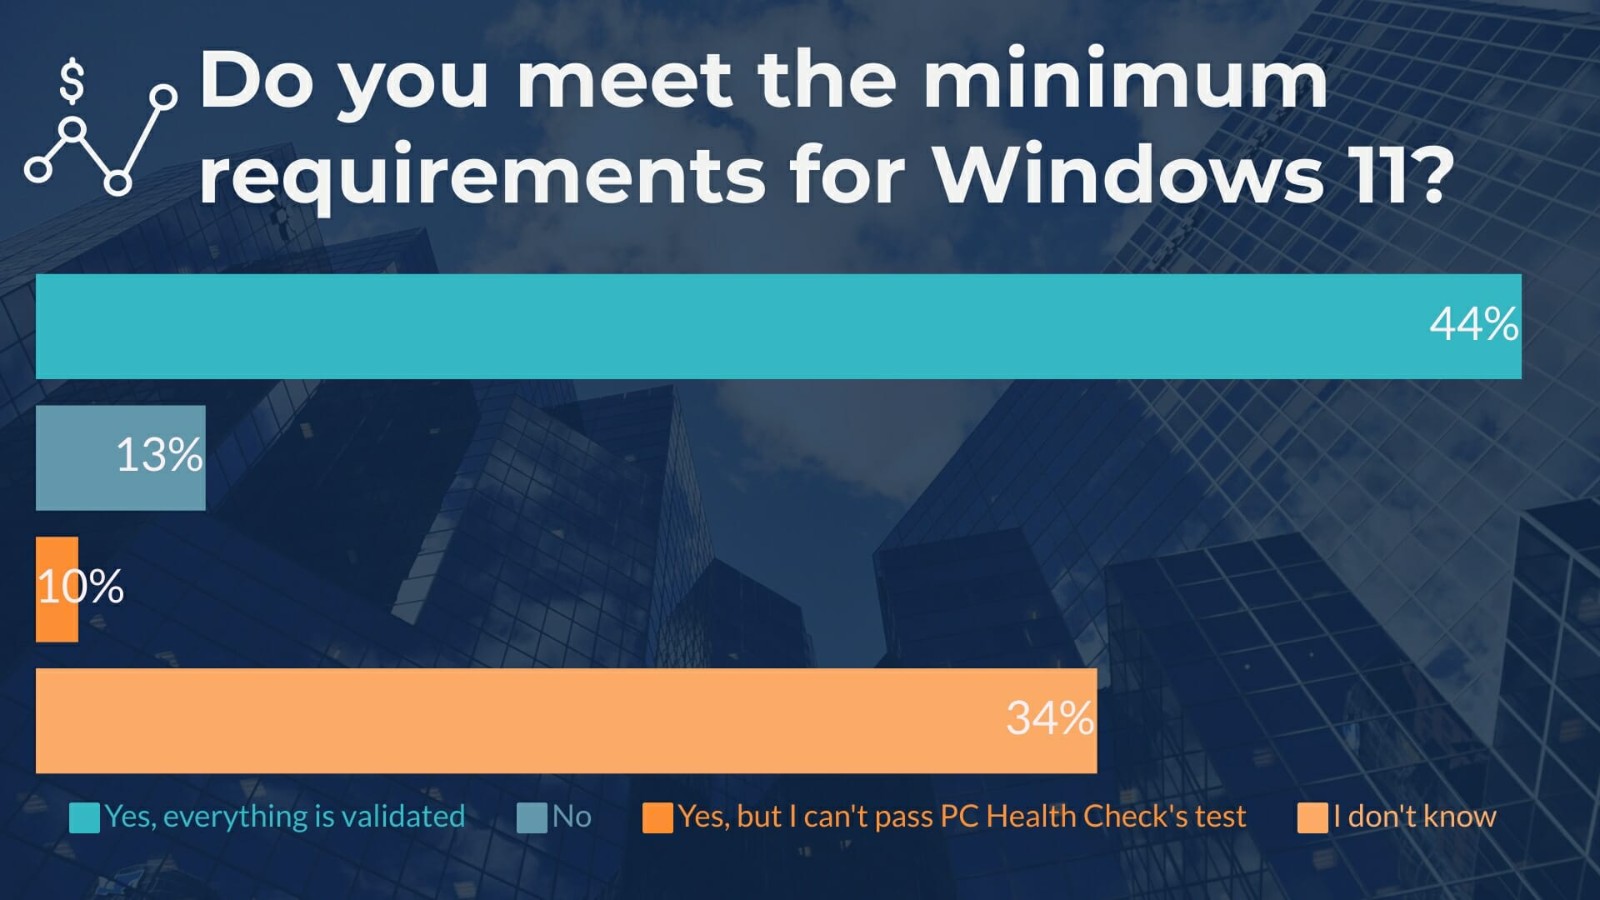 超过一半的受访者表示愿意升级到Windows 11